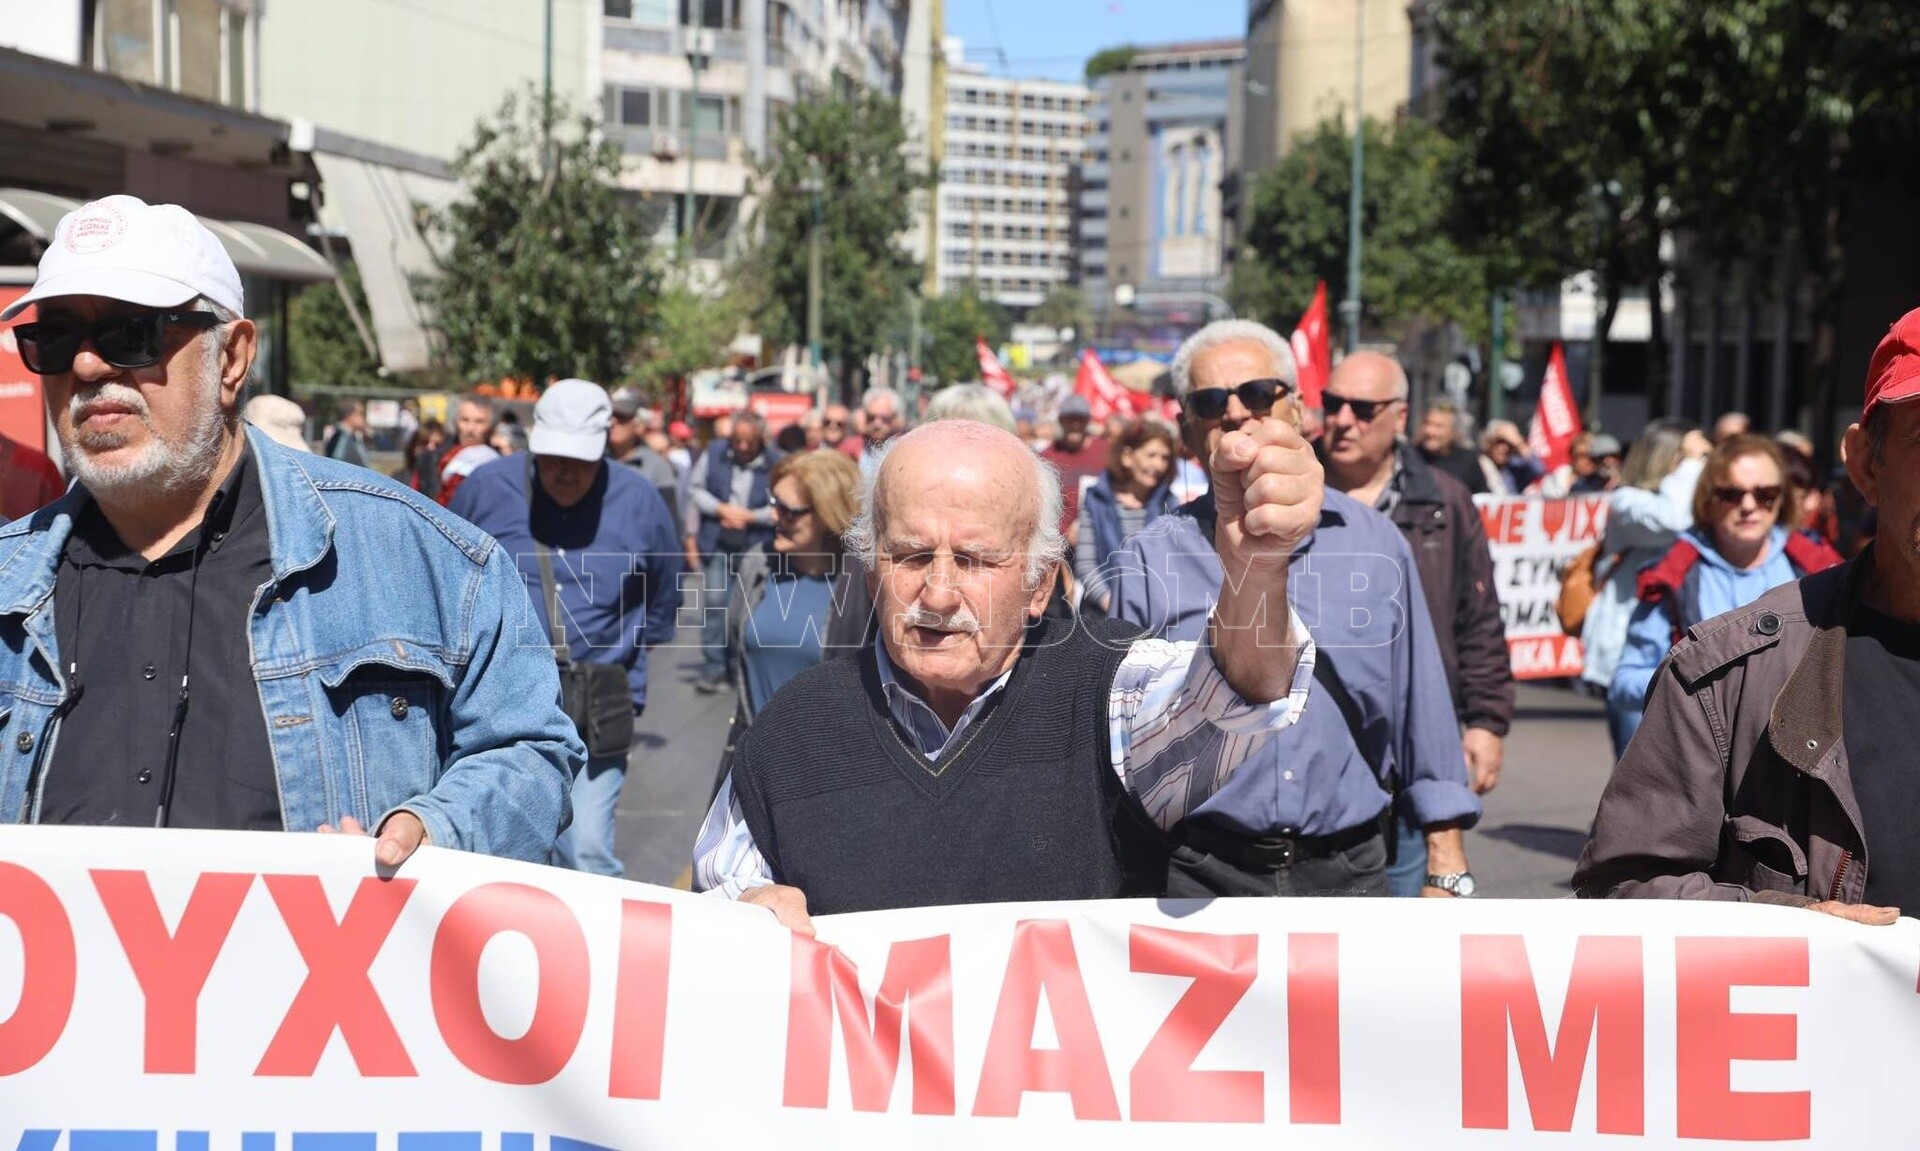 Συγκέντρωση διαμαρτυρίας συνταξιούχων στο κέντρο της Αθήνας (pics) συνταξιούχοι